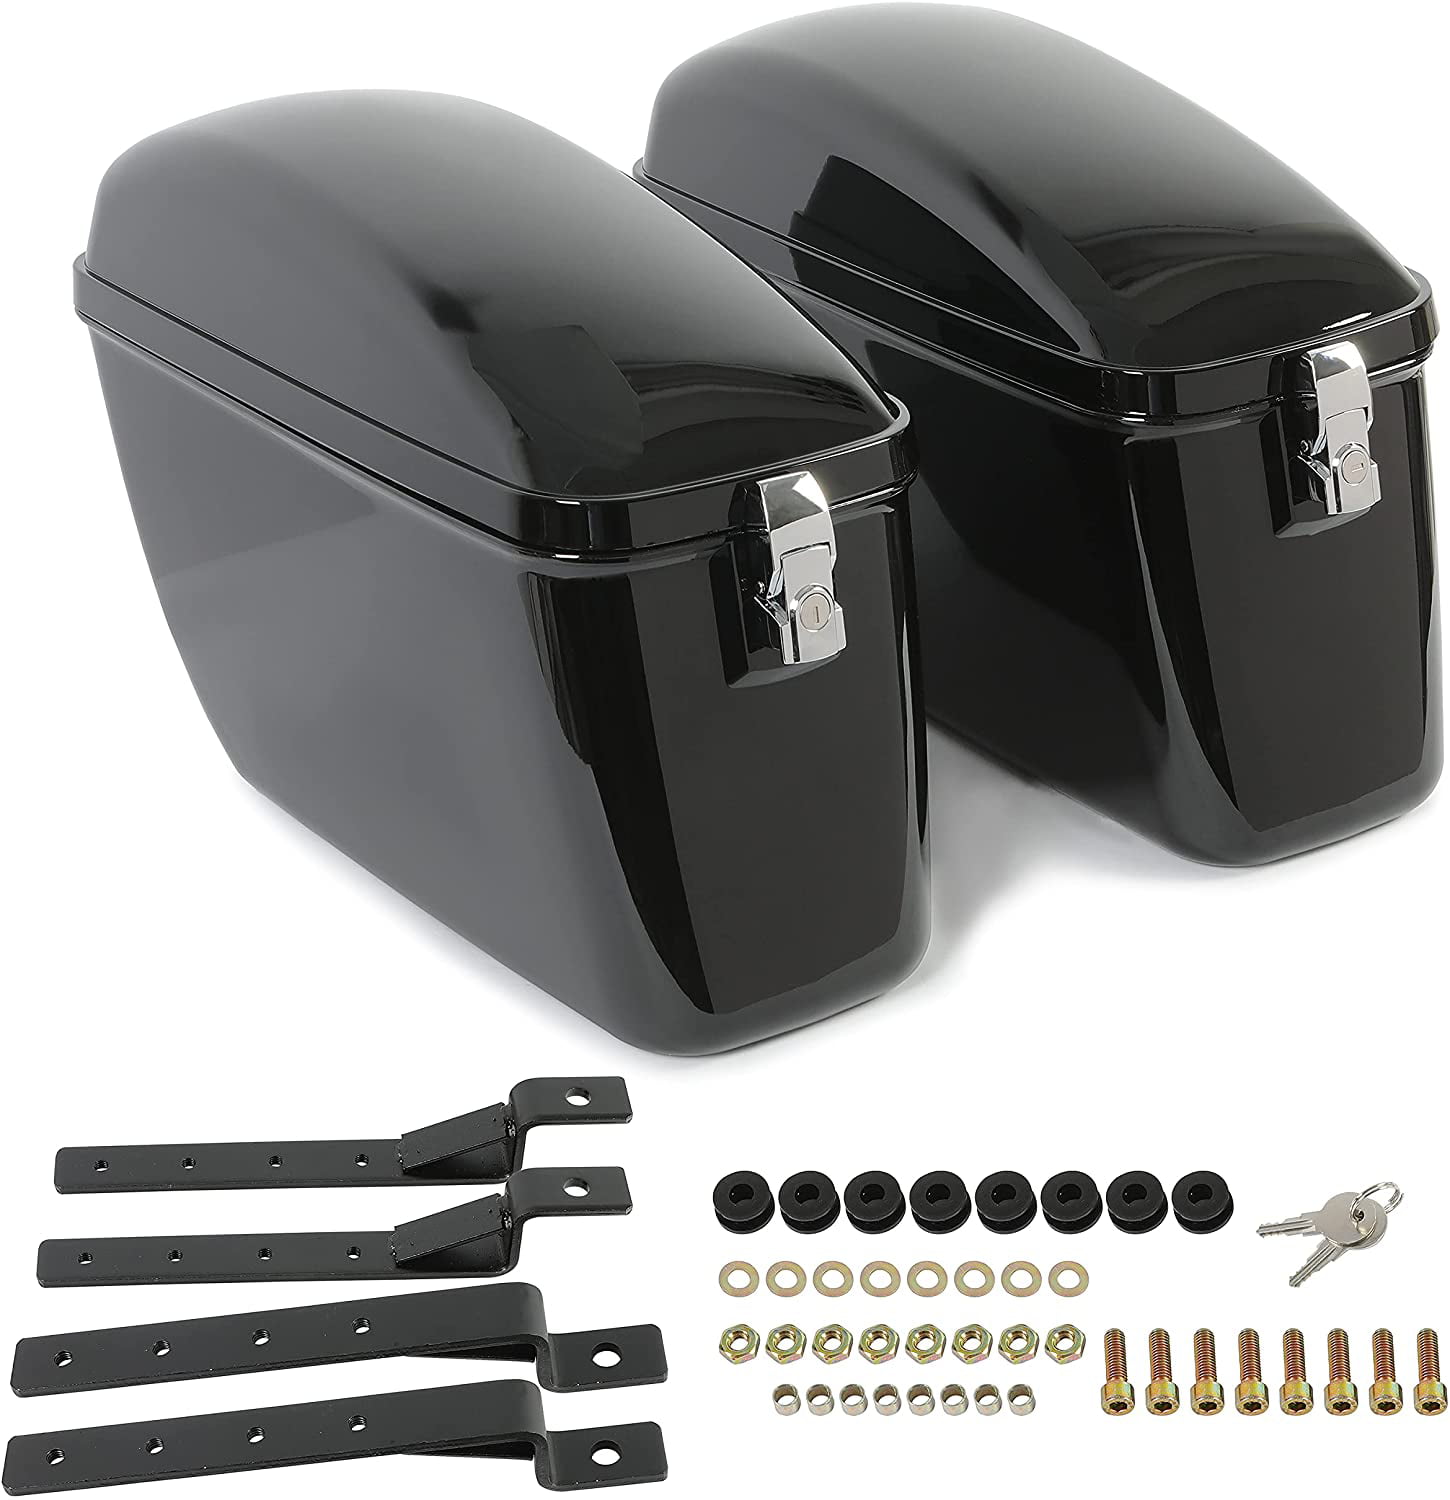 LW Vivid Black Large Hard Saddle Bag Trunk W/brackets for Harley Honda Suzuki Yamaha Hard Saddlebags 